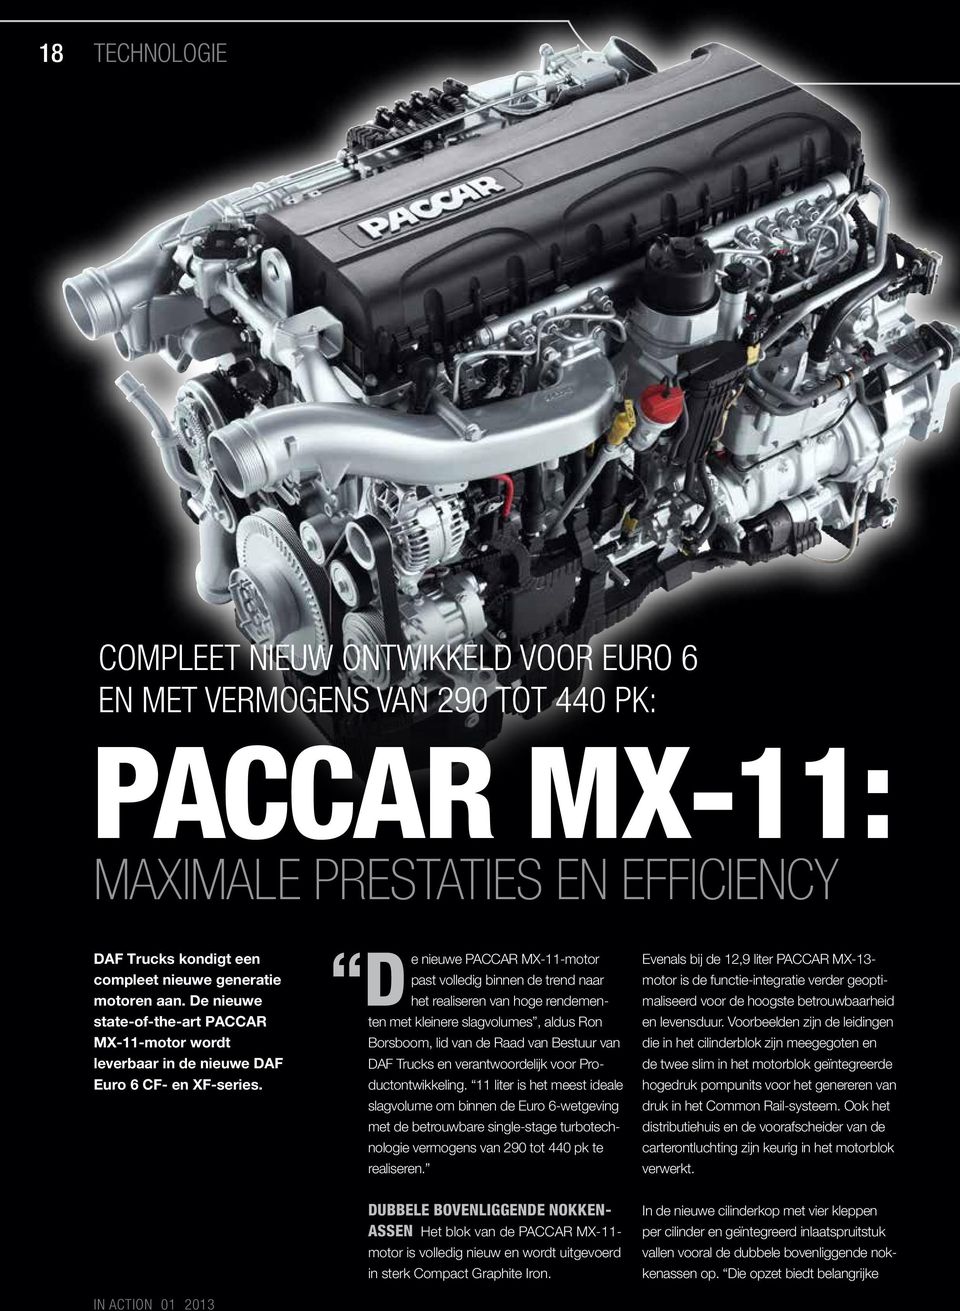 D e nieuwe PACCAR MX-11-motor past volledig binnen de trend naar het realiseren van hoge rendementen met kleinere slagvolumes, aldus Ron Borsboom, lid van de Raad van Bestuur van DAF Trucks en